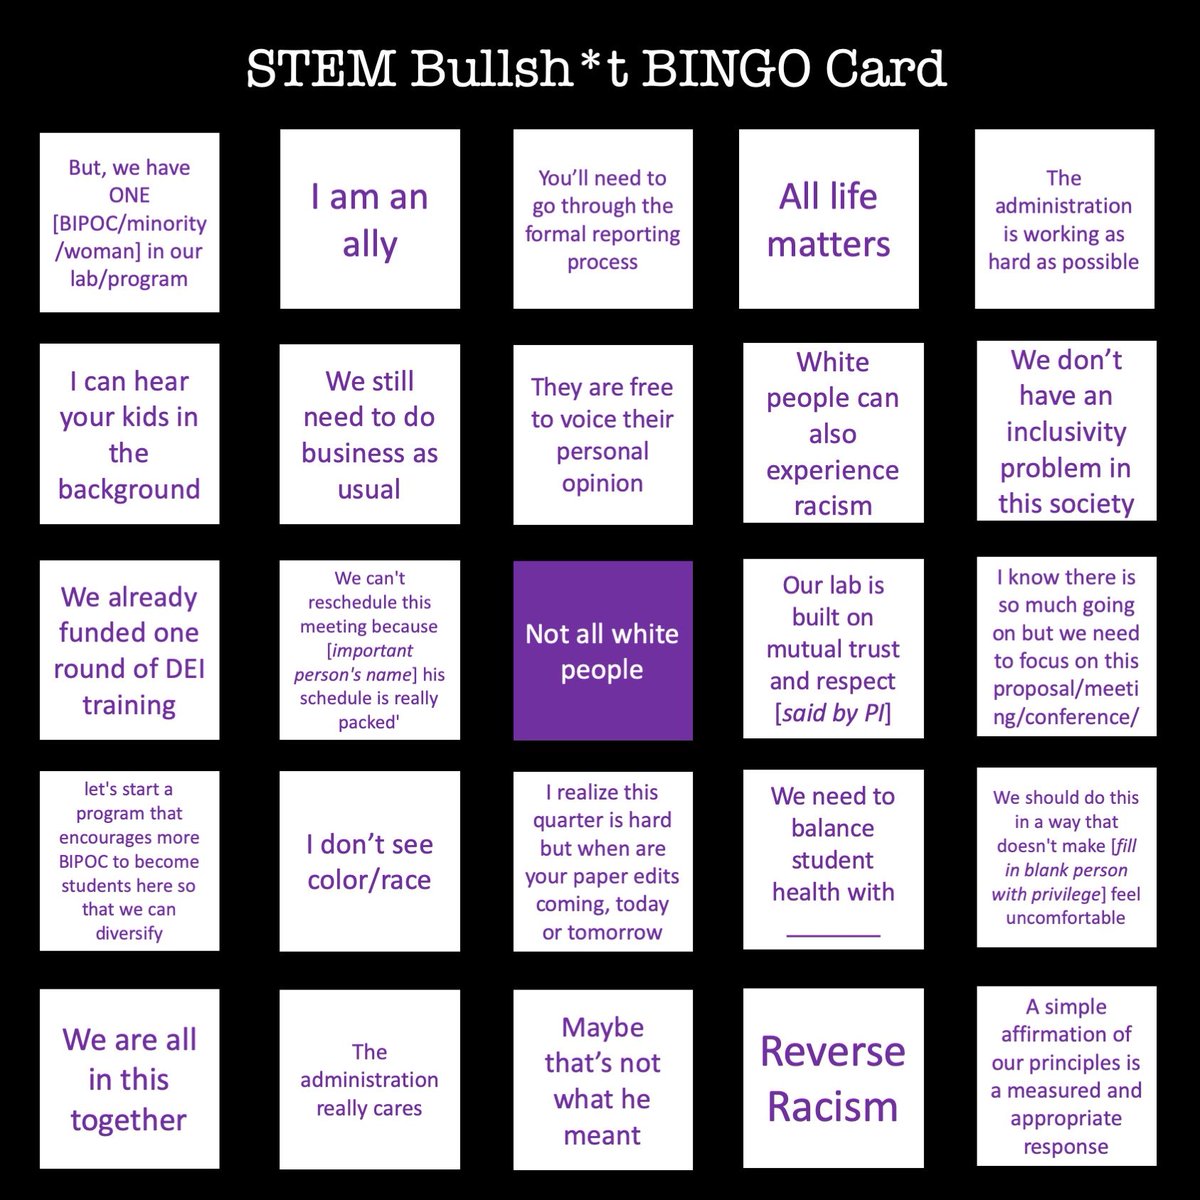 Racist Bullsh*t in academia/STEM bingo card  #ShutDownSTEM  #ShutDownAcademia  #STEMBingoCards 2/